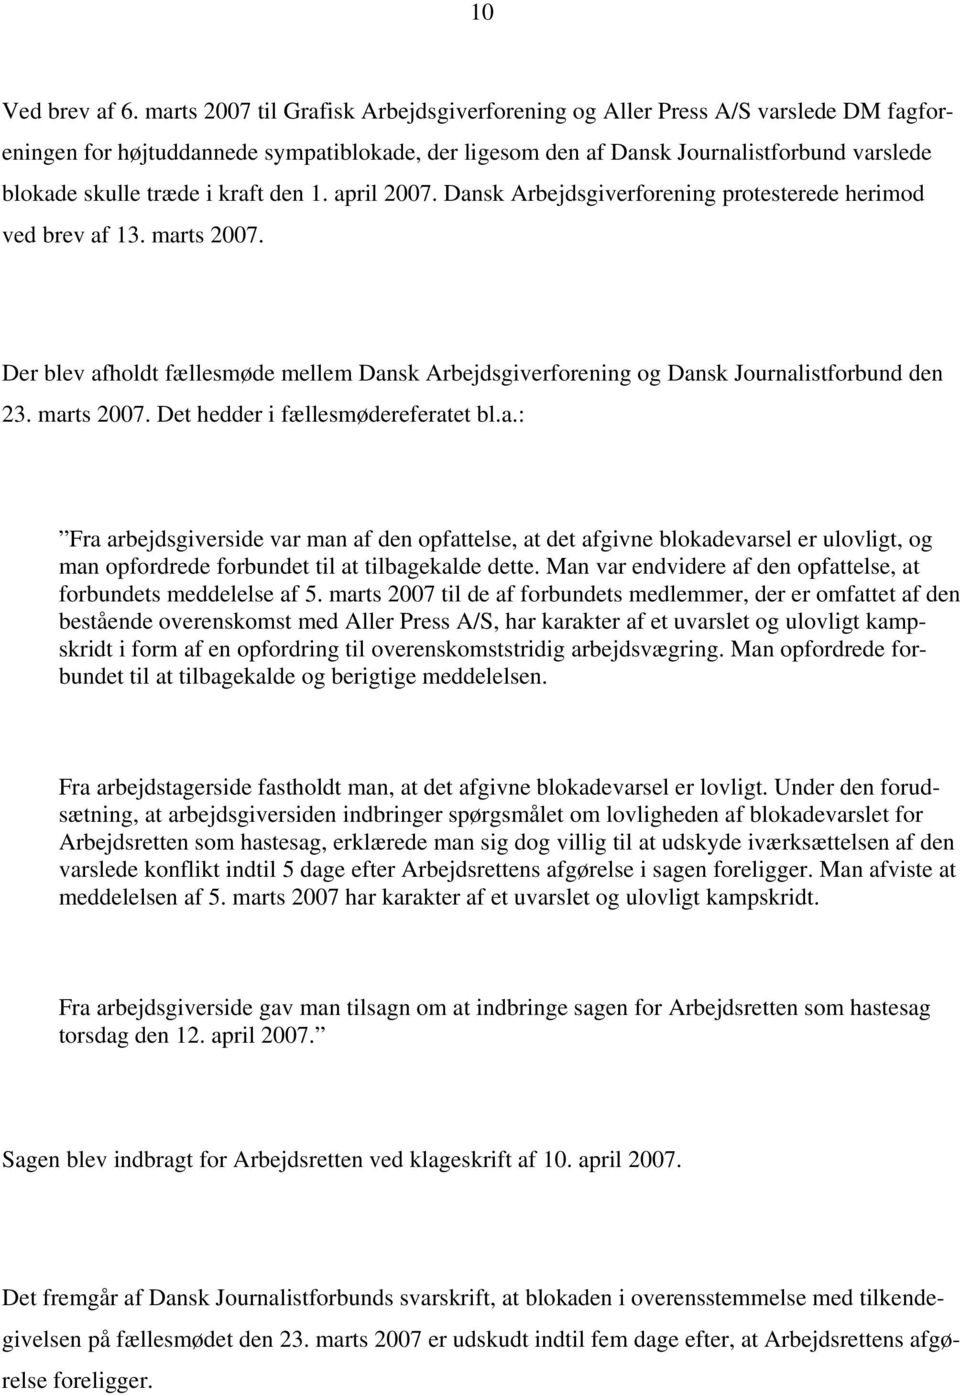 kraft den 1. april 2007. Dansk Arbejdsgiverforening protesterede herimod ved brev af 13. marts 2007. Der blev afholdt fællesmøde mellem Dansk Arbejdsgiverforening og Dansk Journalistforbund den 23.